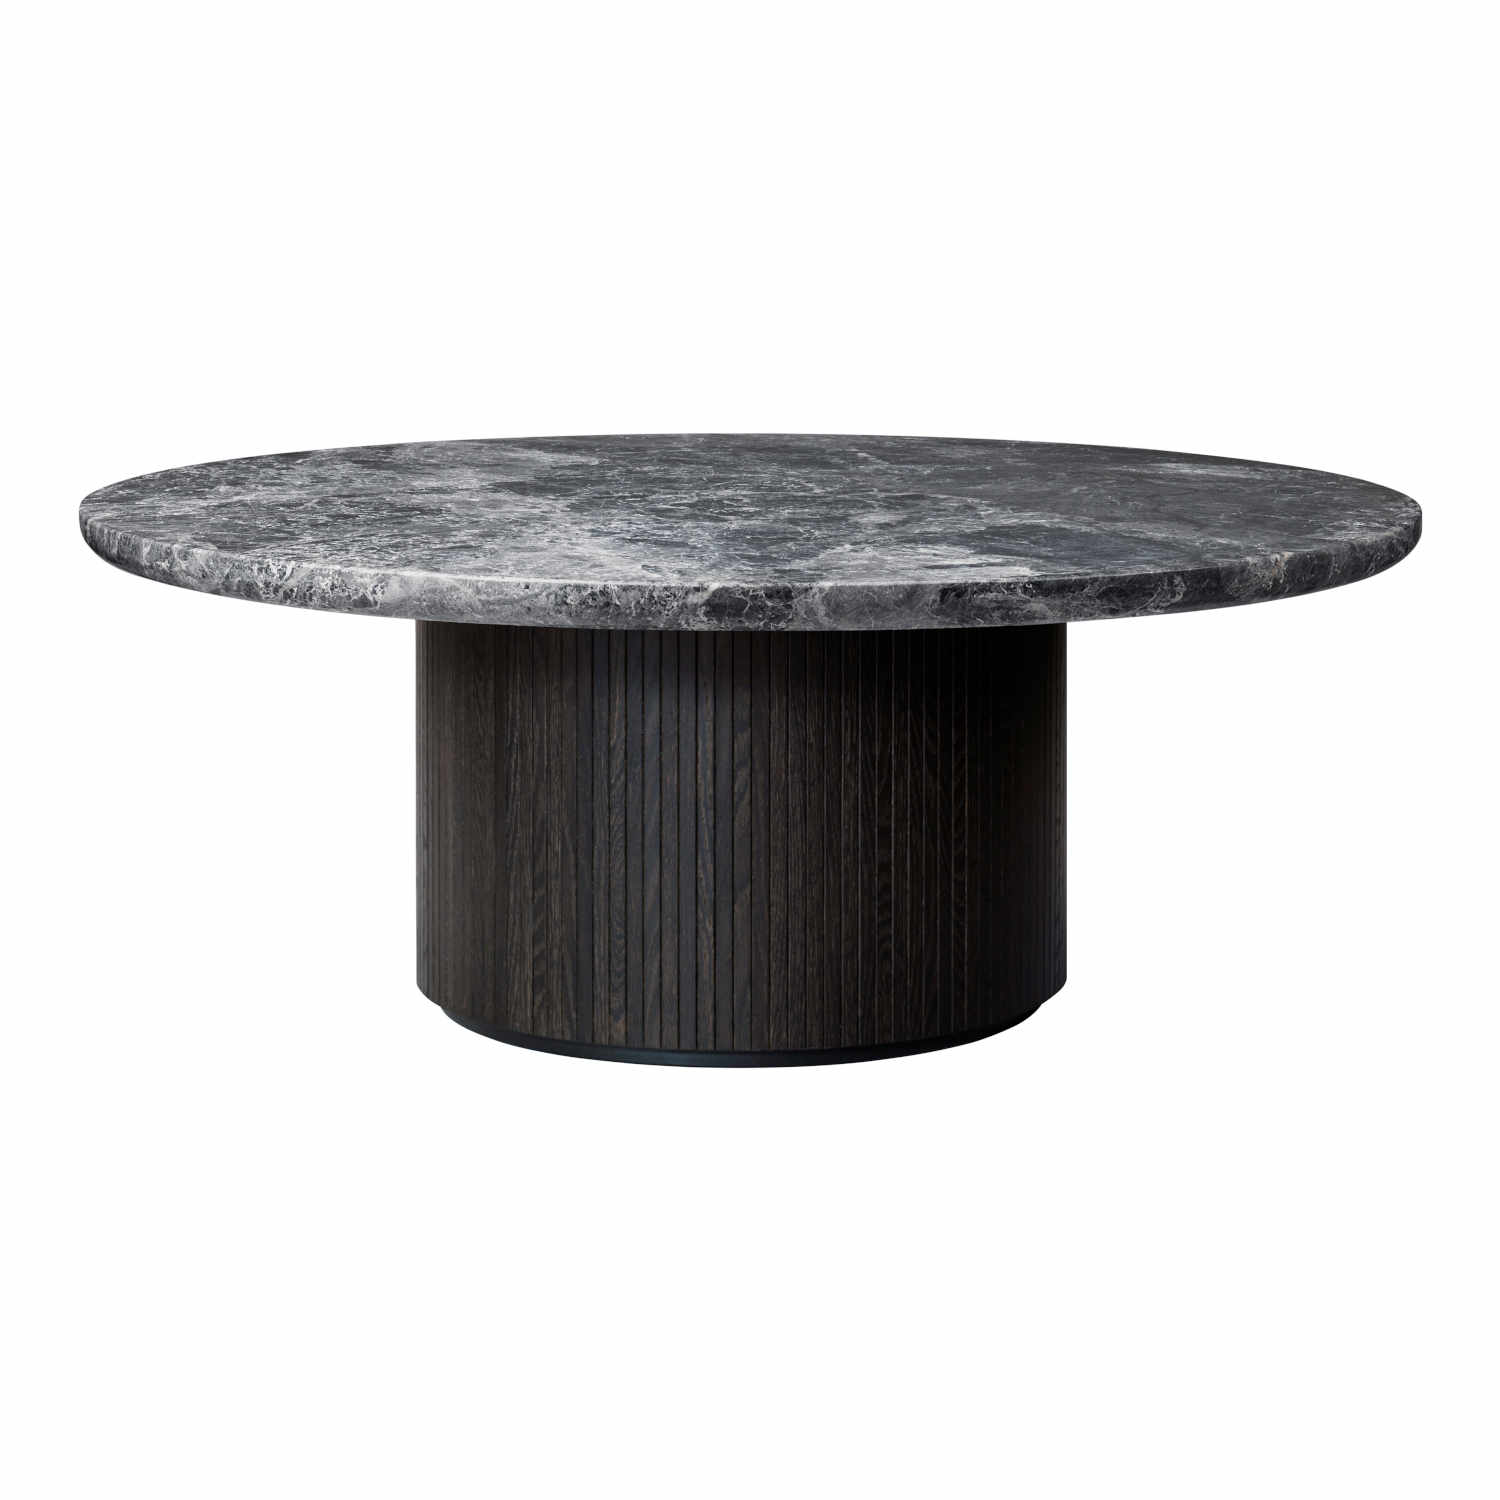 Moon Coffee Table Beistelltisch, Grösse ø 150 cm, Ausführung marmor, grey emperador/holz, stained veneer oak (braun/schwarz) von GUBI